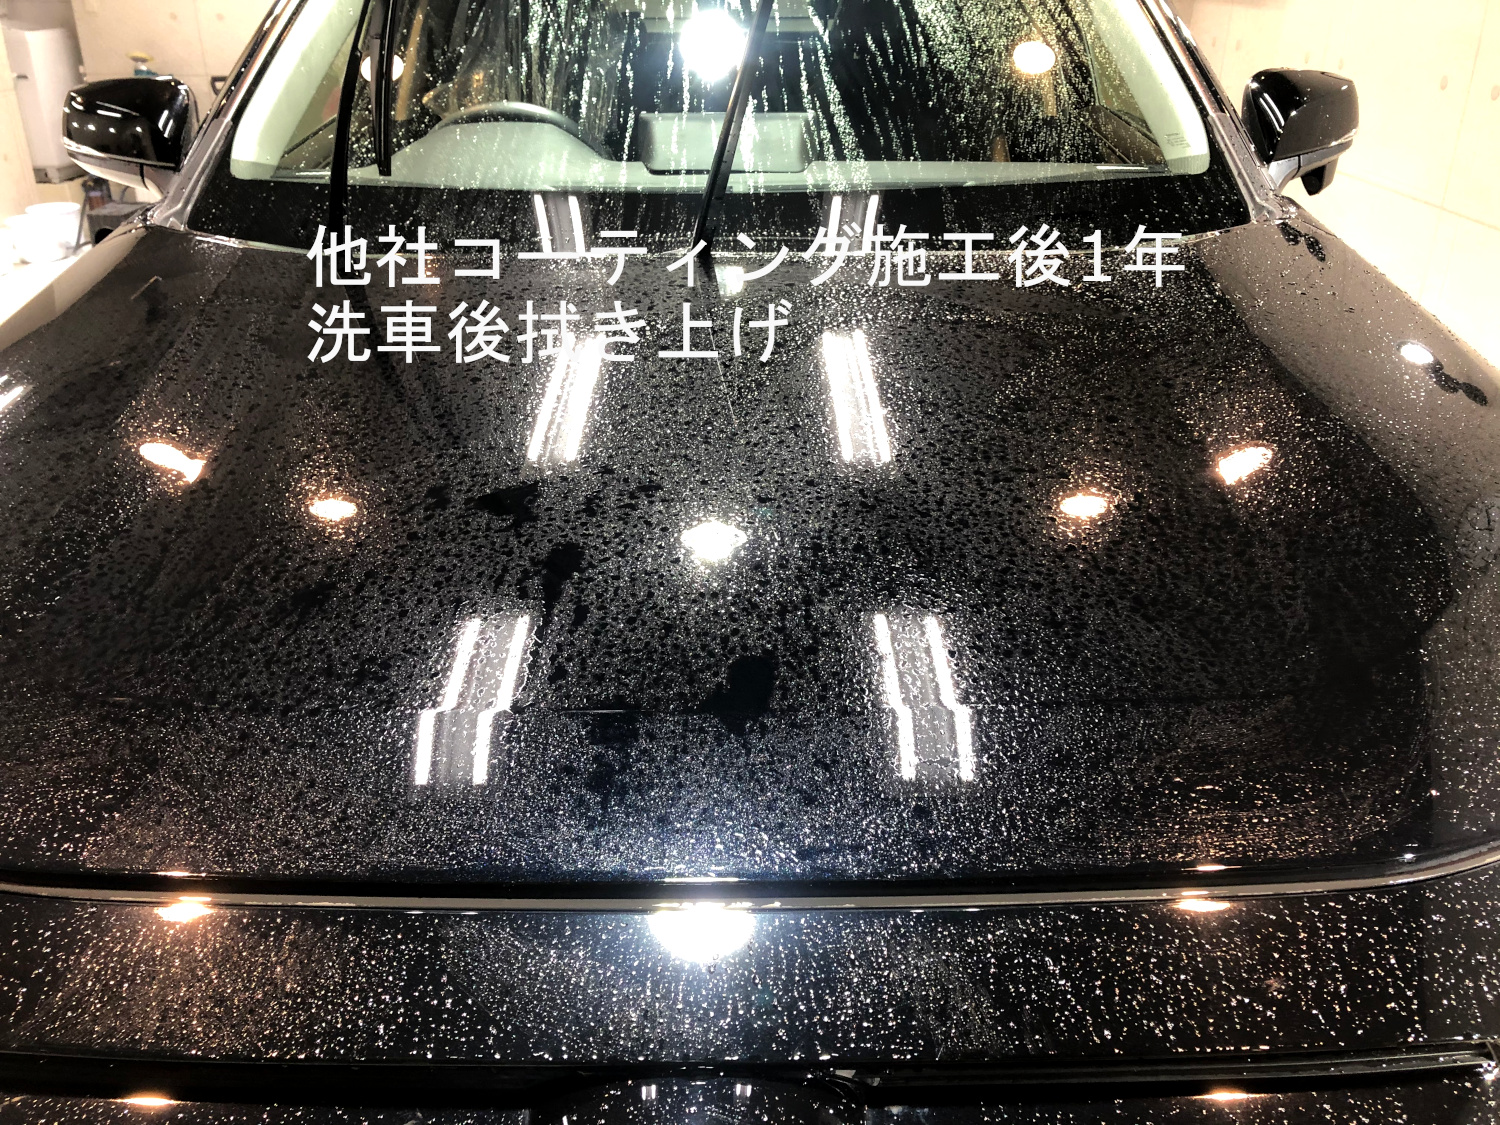 洗車後